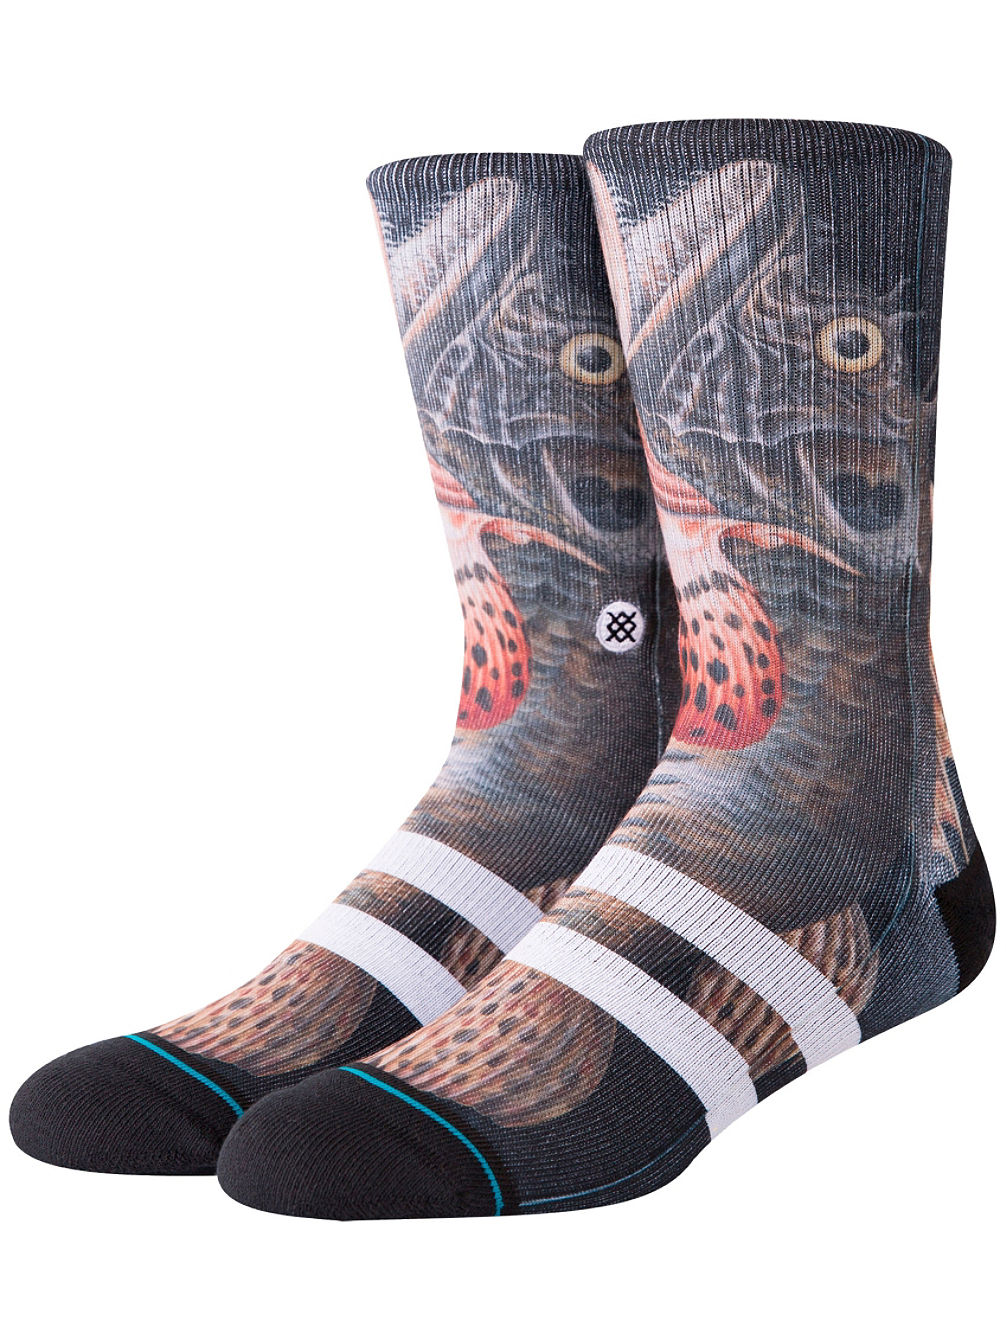 Taylor Creek Socks